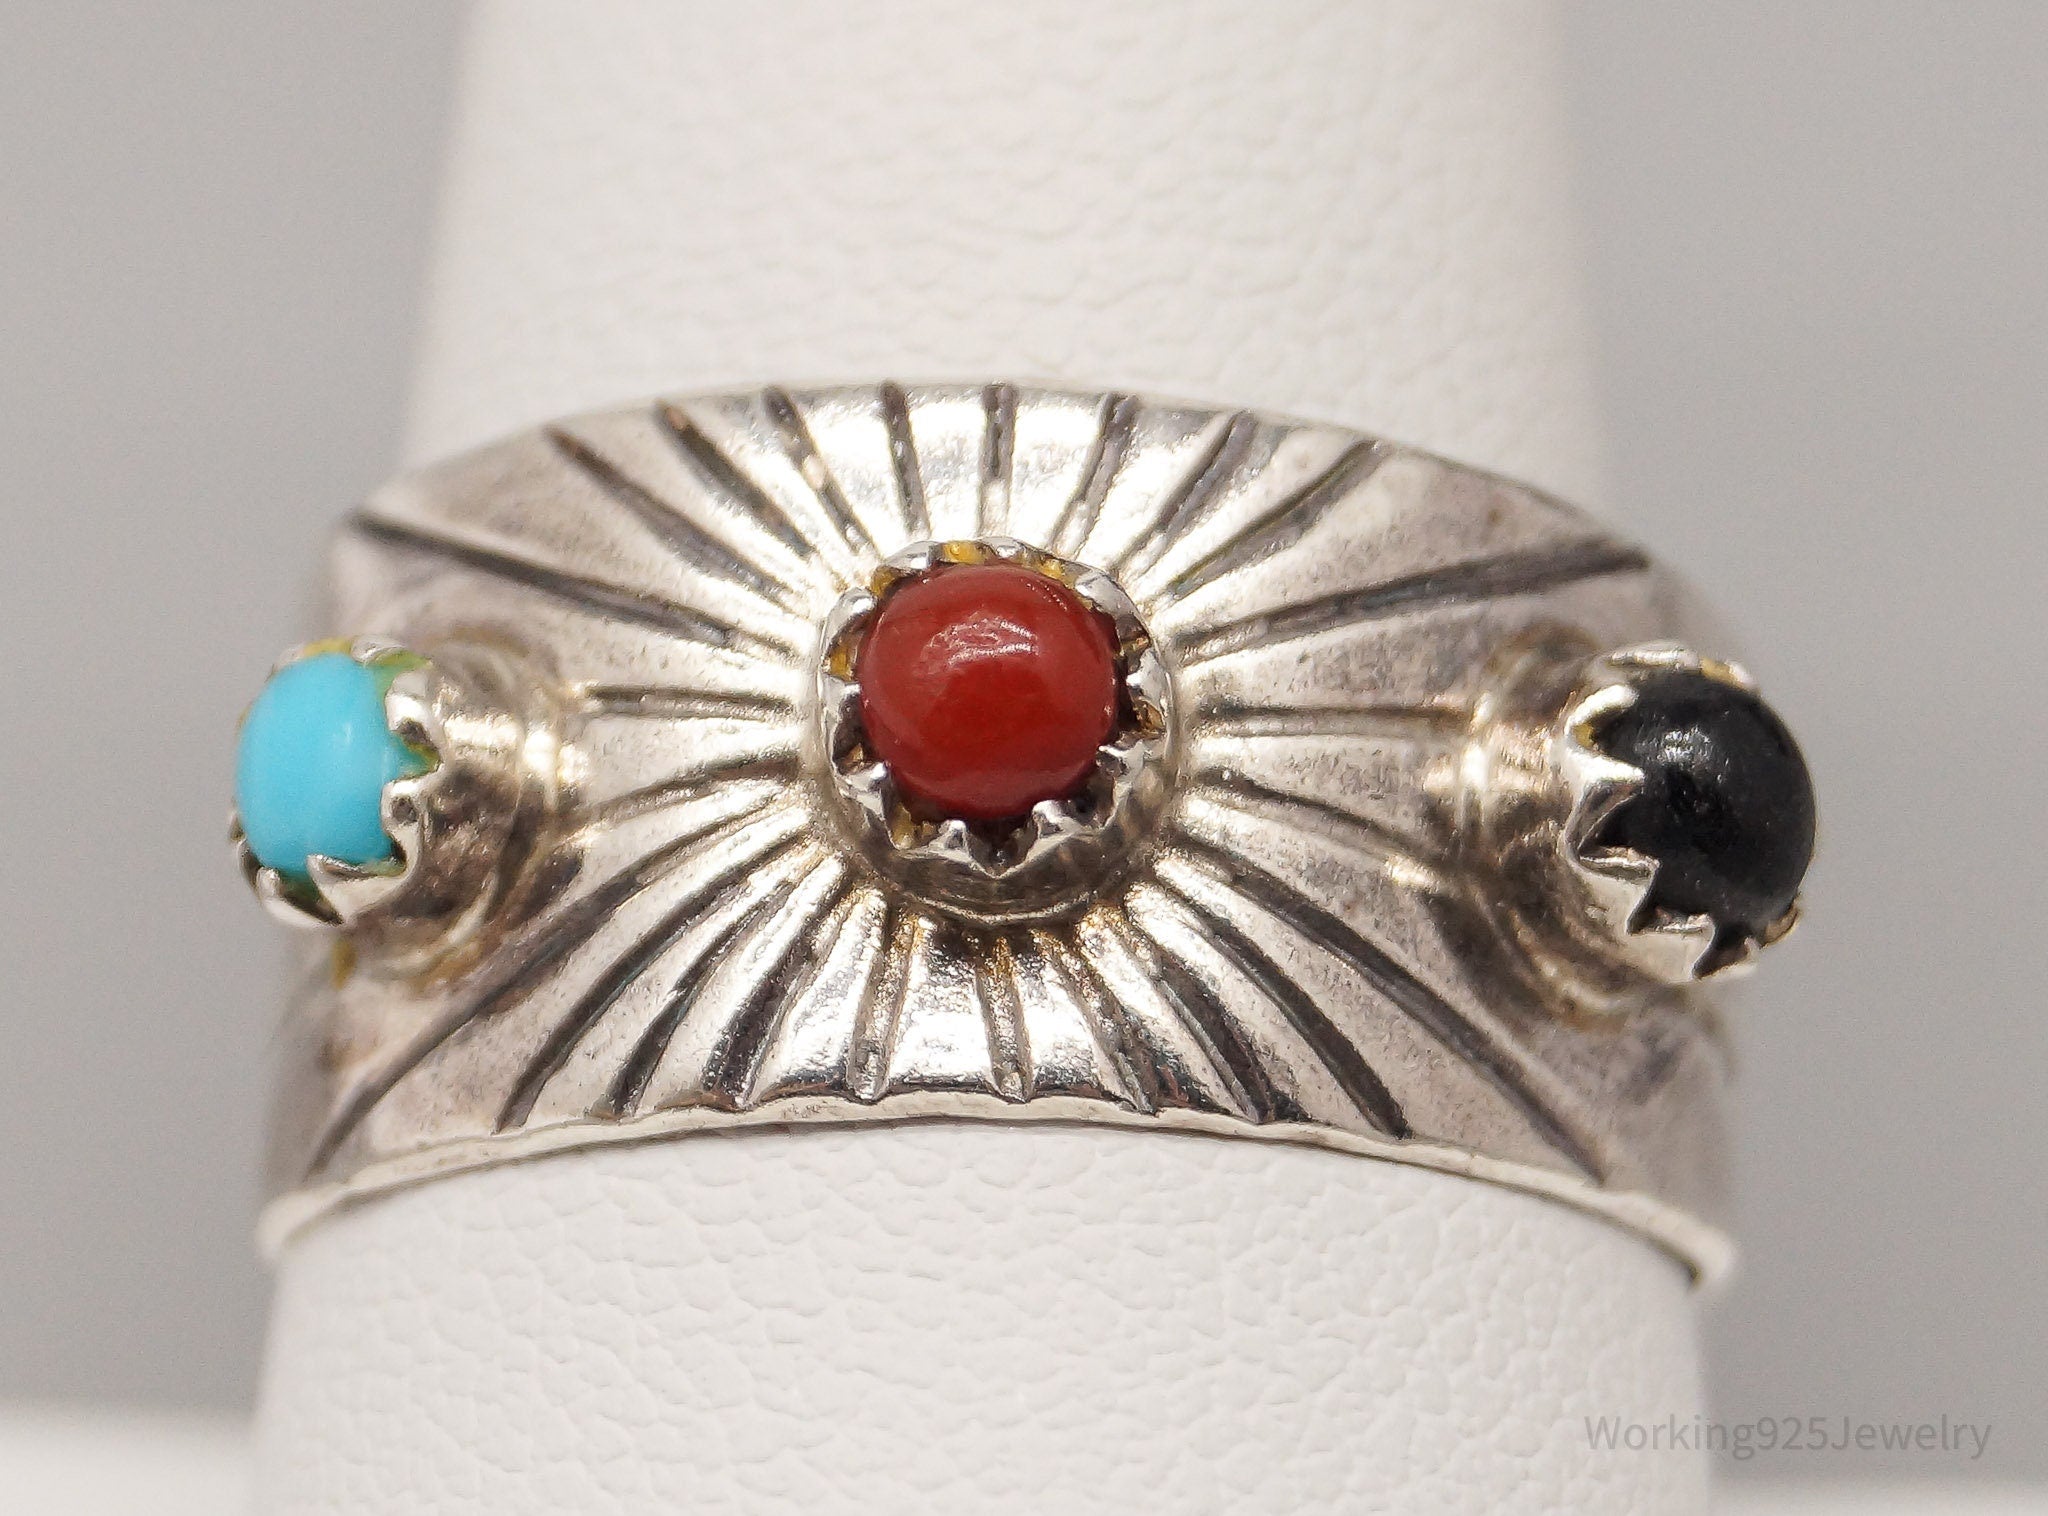 Vintage Native American Multi Gem Sterling Silver Ring - Size 10 Adjustable